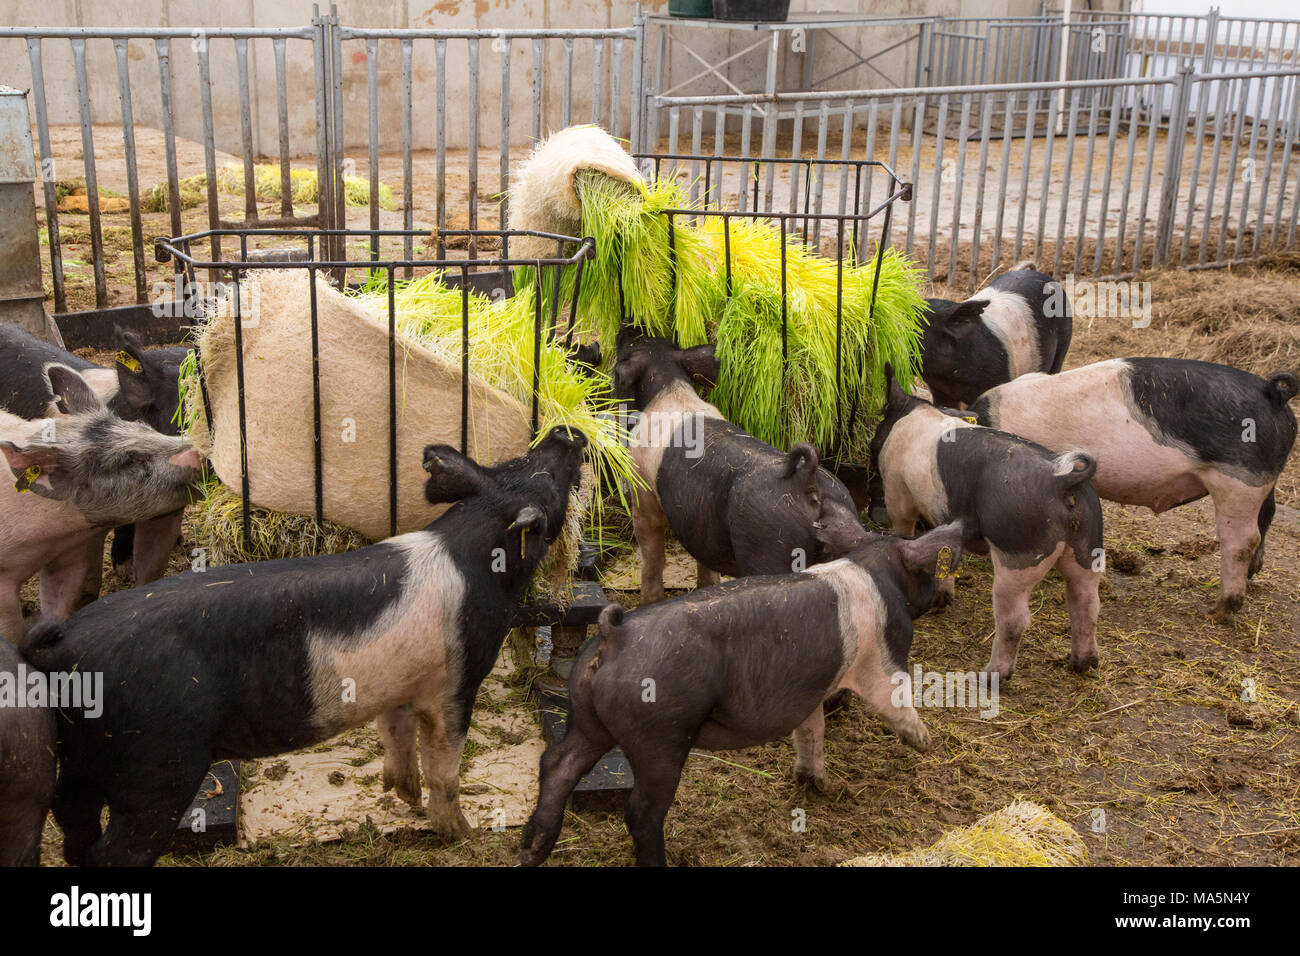 L'agriculture hydroponique. L'alimentation des porcs l'orge cultivées en hydroponique. Galena, Iowa, États-Unis. Banque D'Images